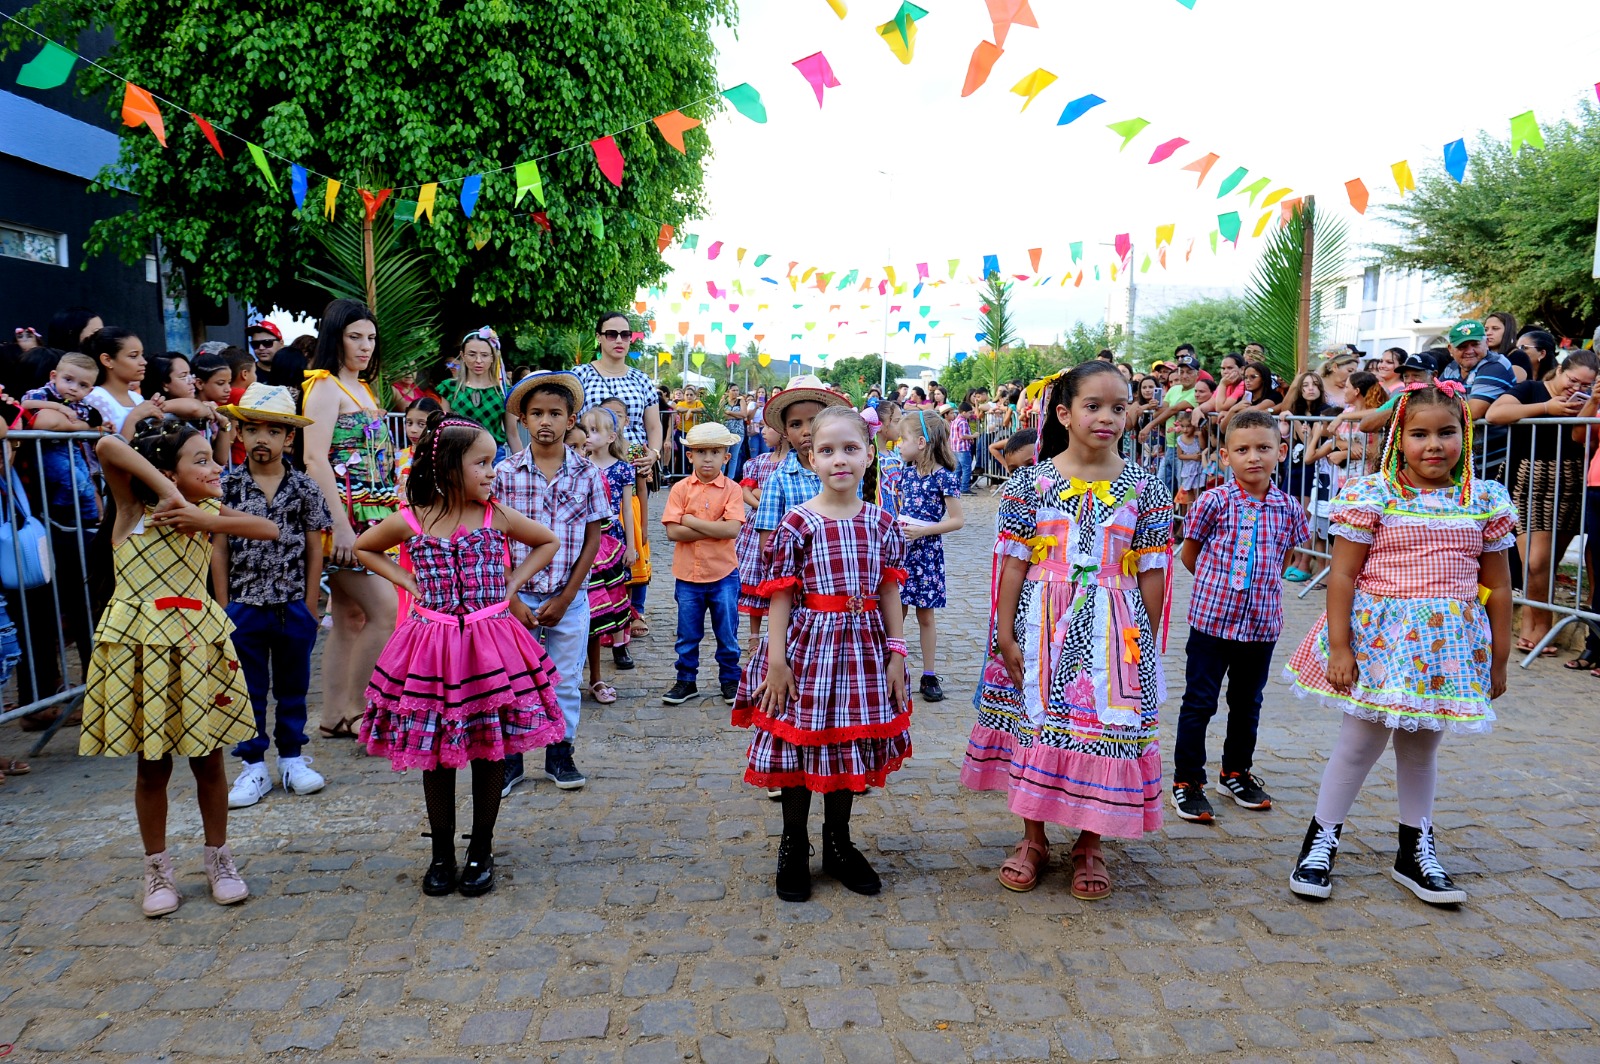 Festival-Quadrilhas-Escolares-9 Retorno às atividades: Festival de Quadrilhas movimenta comunidade escolar e atrai grande público